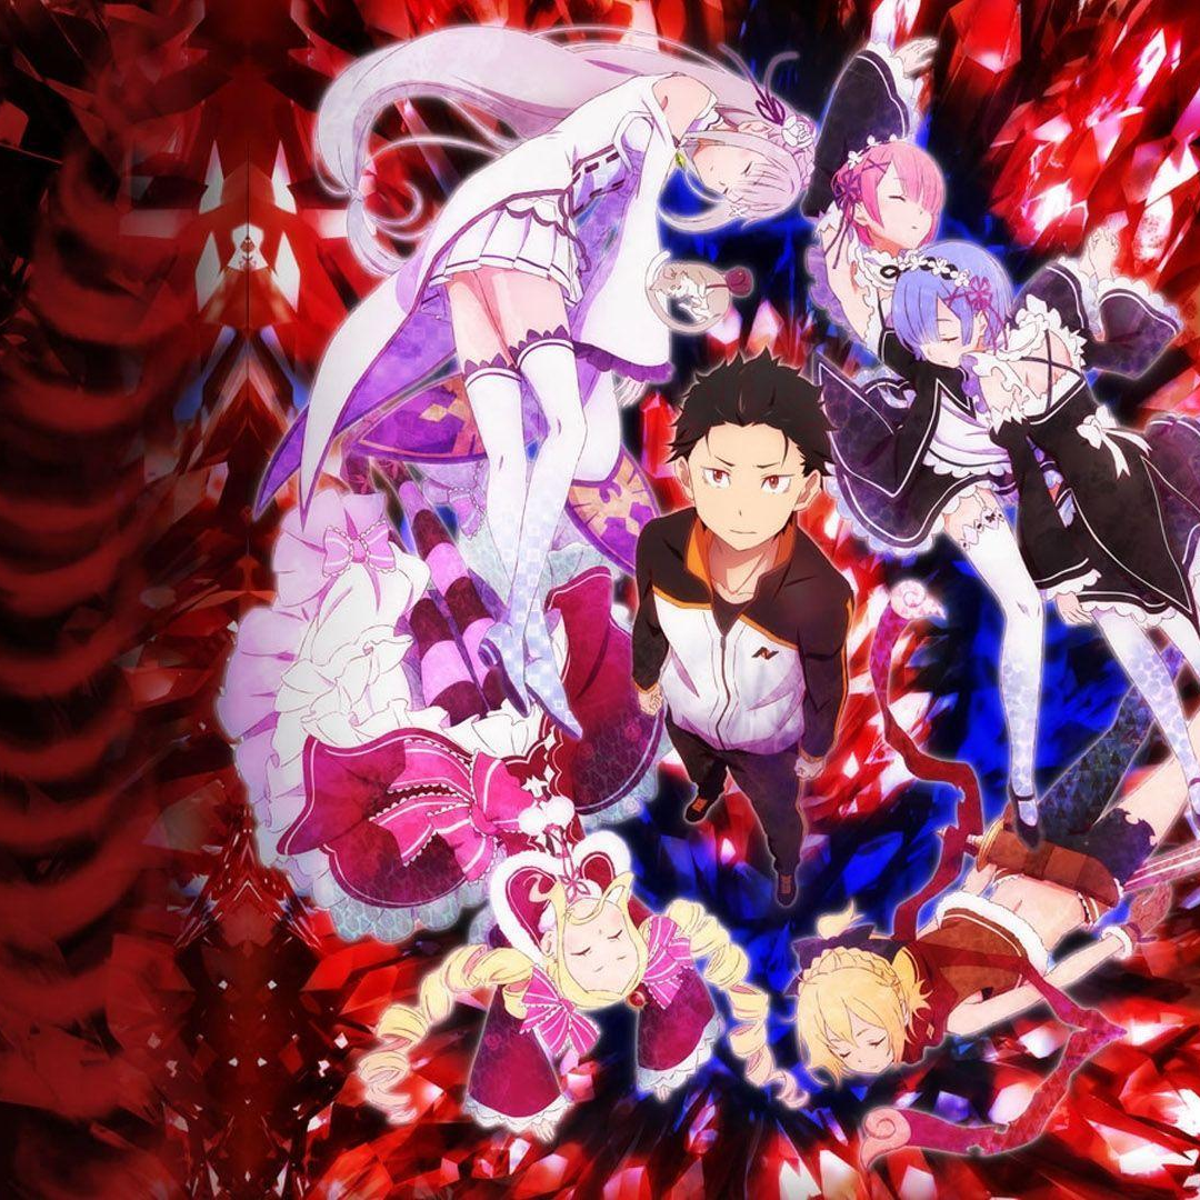 Novo OVA de Re: Zero tem Trailer e data divulgados - Anime Center BR